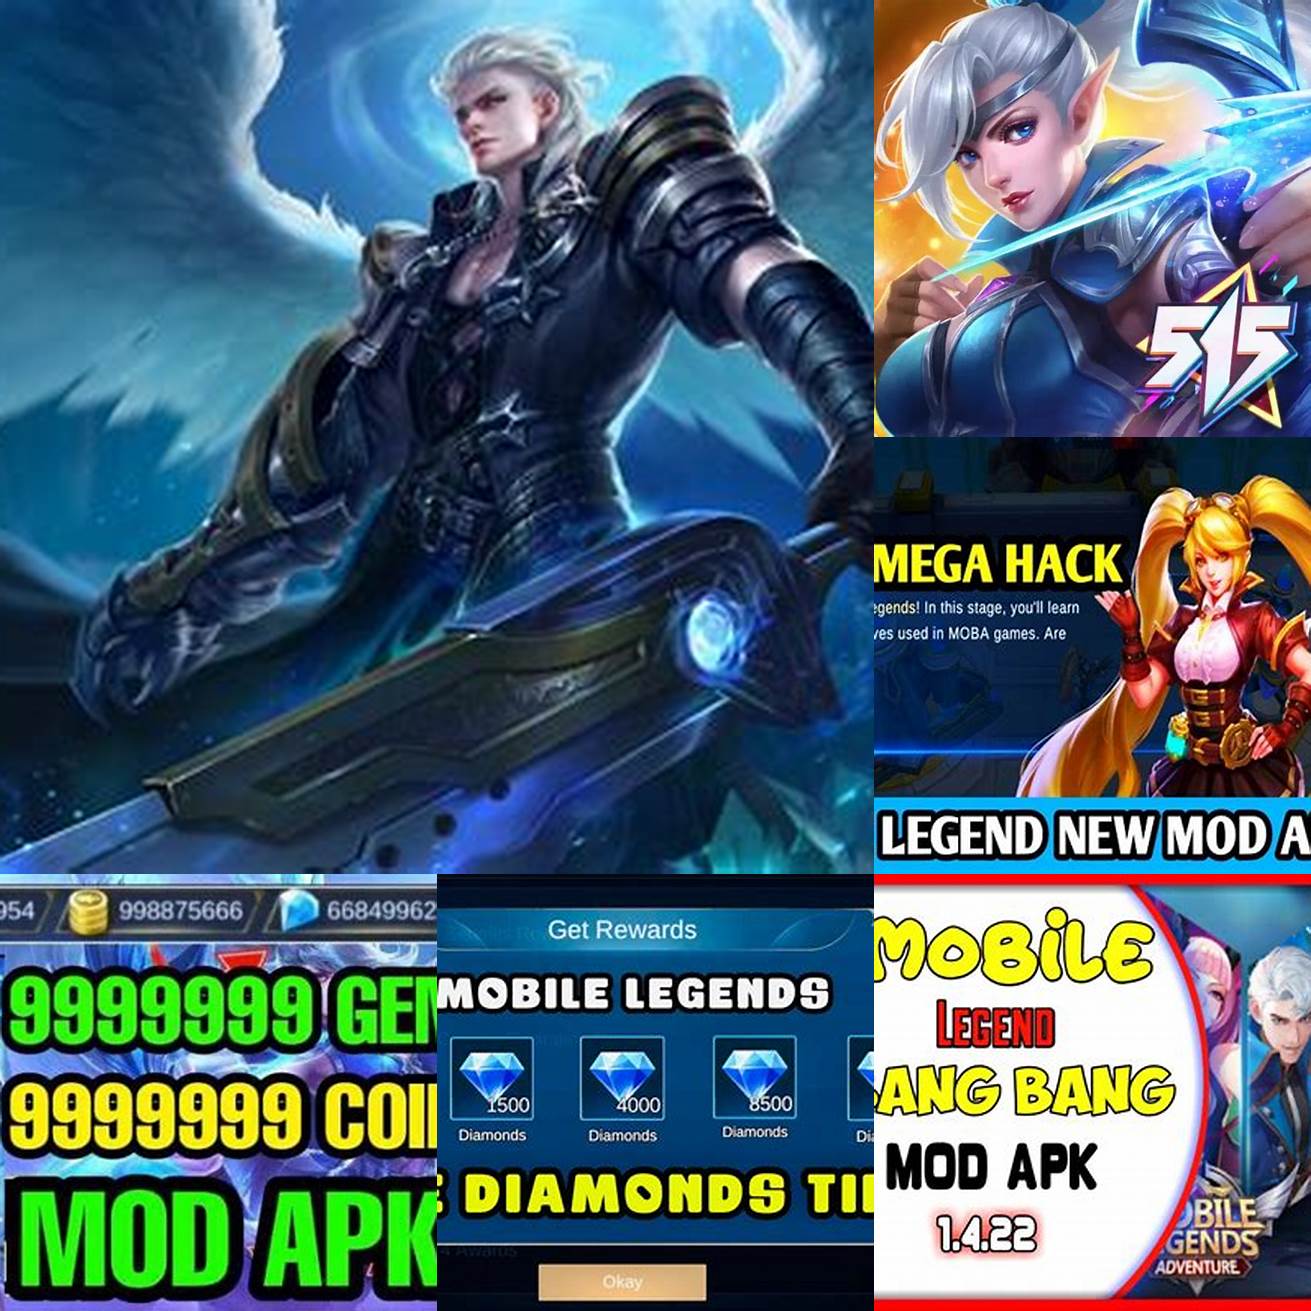 1 Apakah saya bisa menggunakan mod APK Mobile Legend Diamond tanpa risiko